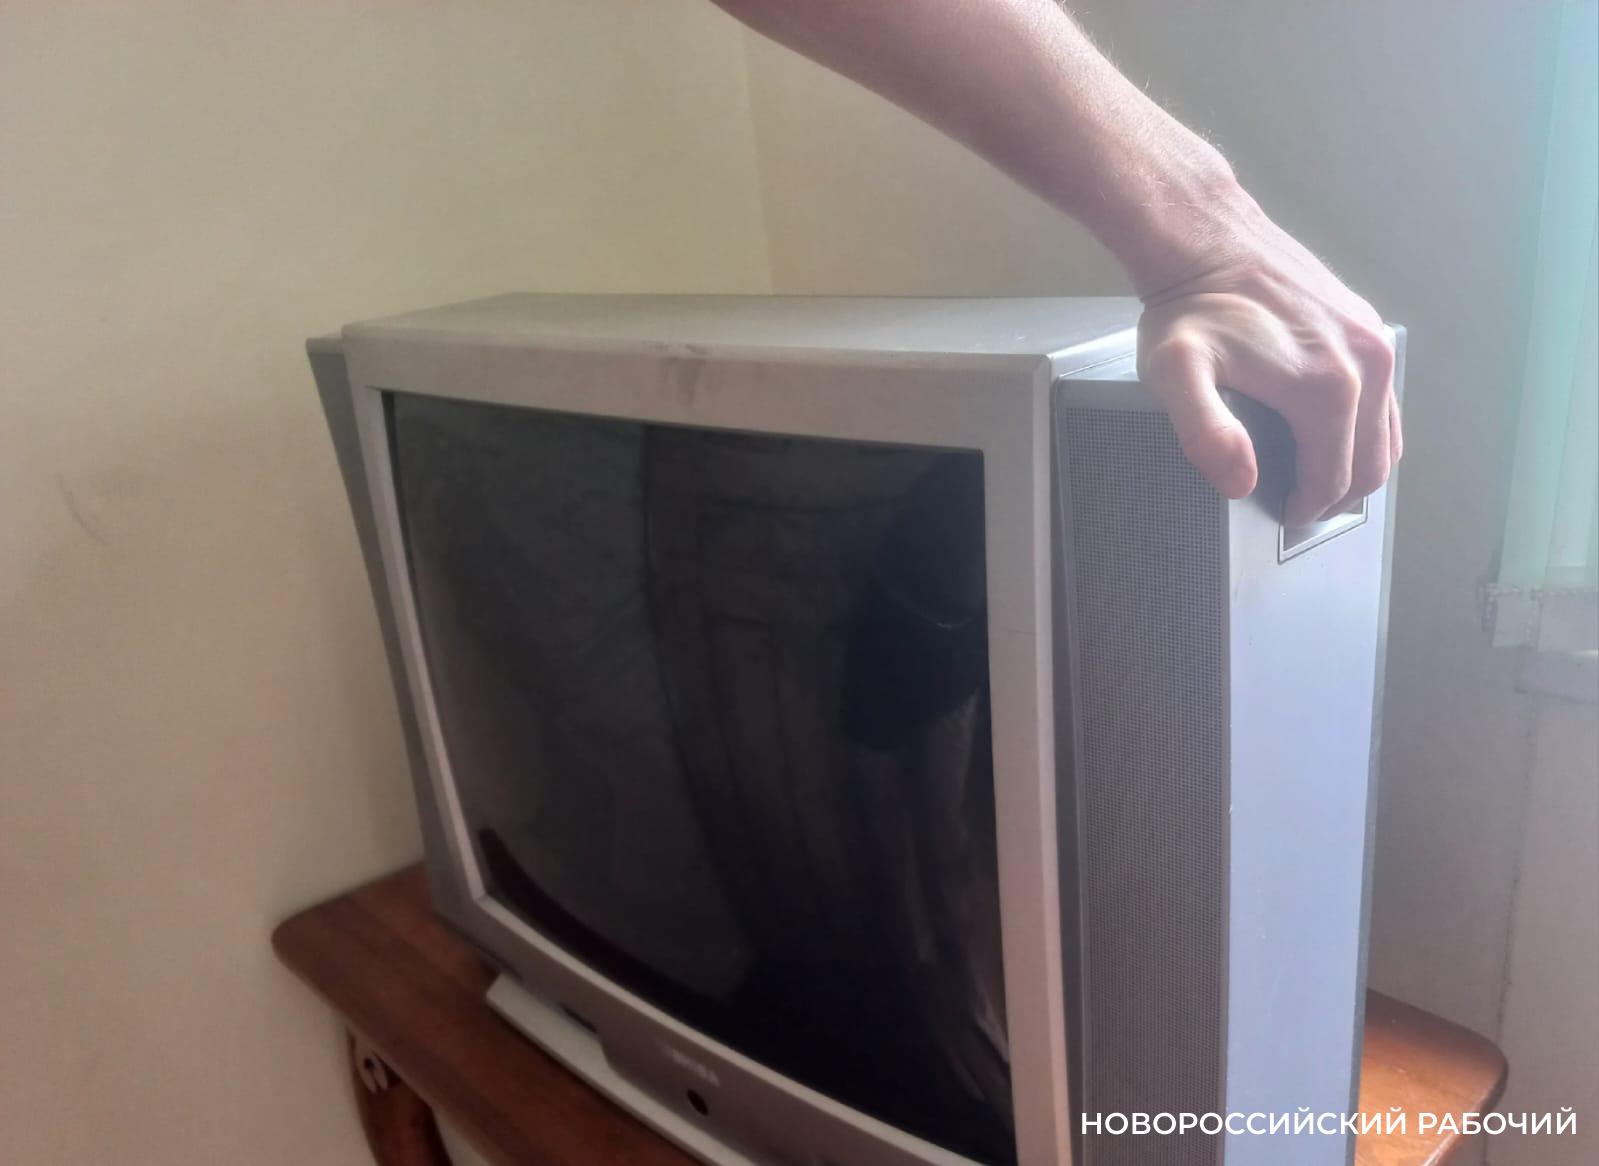 Новороссийцы теряют телевизионный сигнал. Так куда пропадает «цифра»?